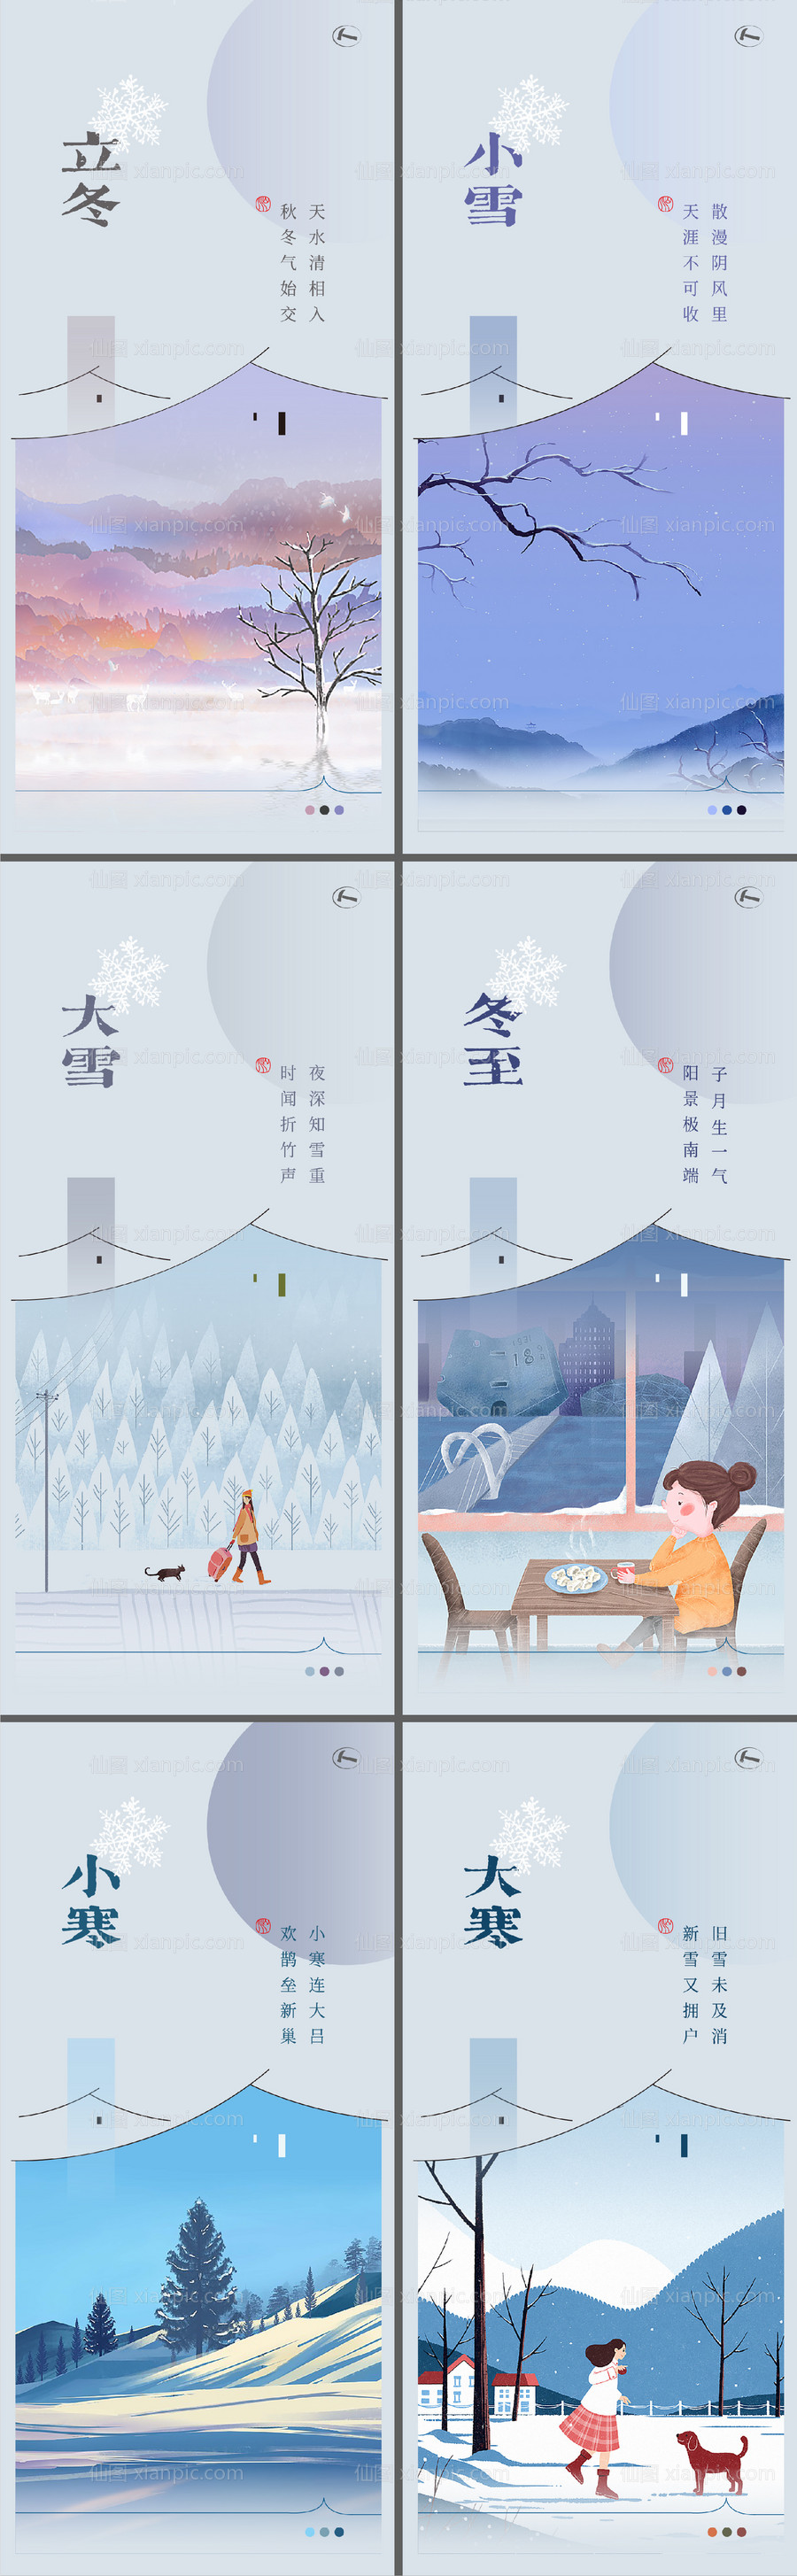 素材乐-冬季二十四节气海报